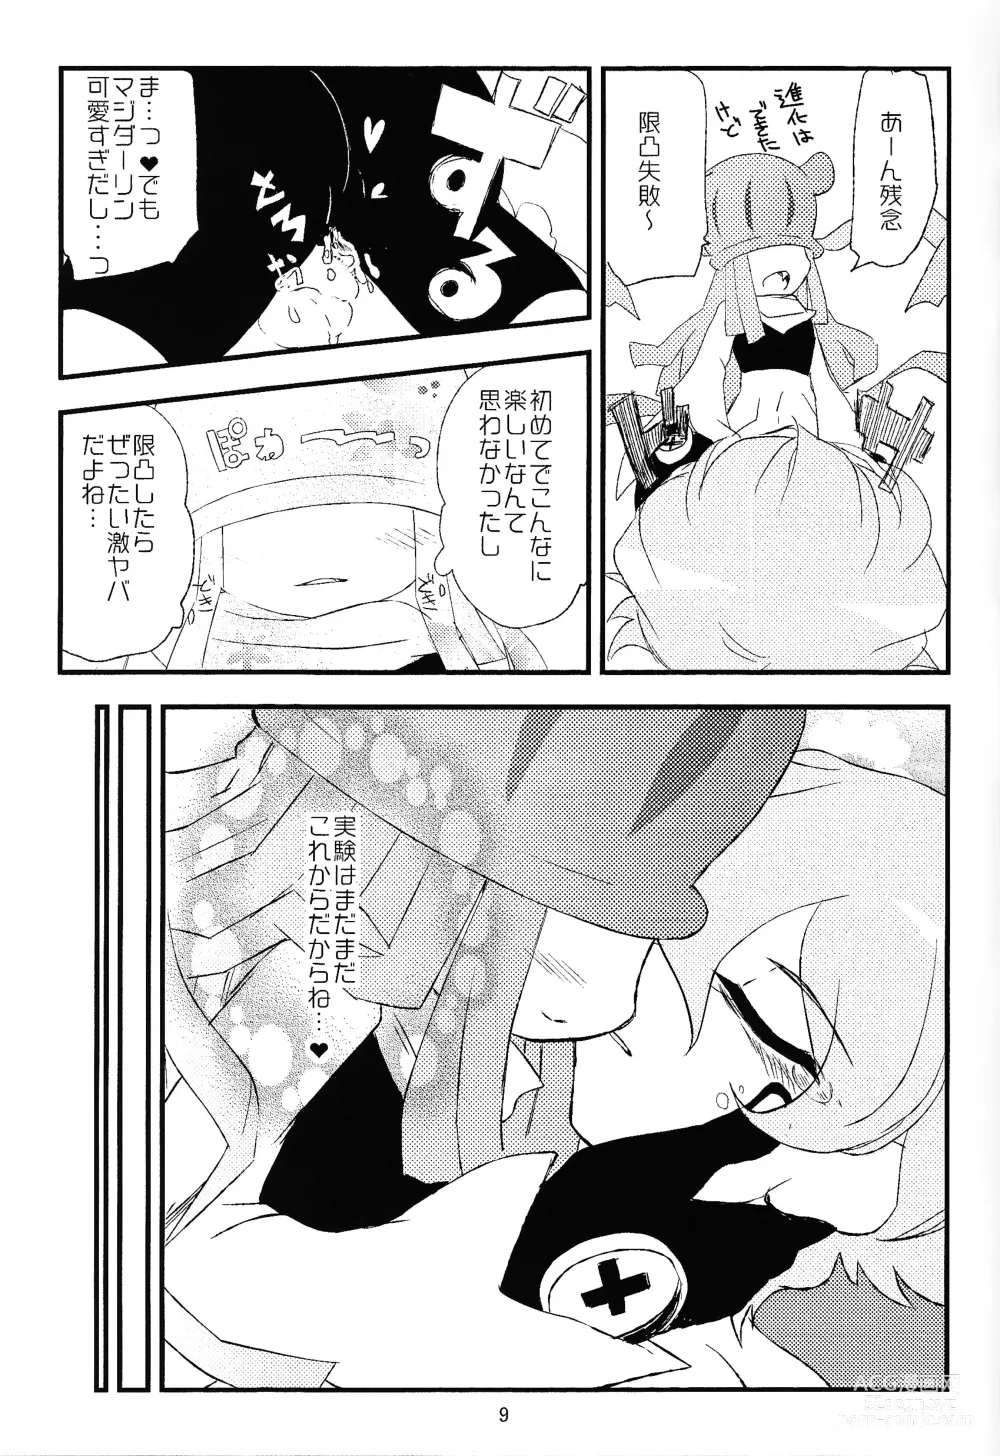 Page 10 of doujinshi Chusei kokoro ikusei gairon 1